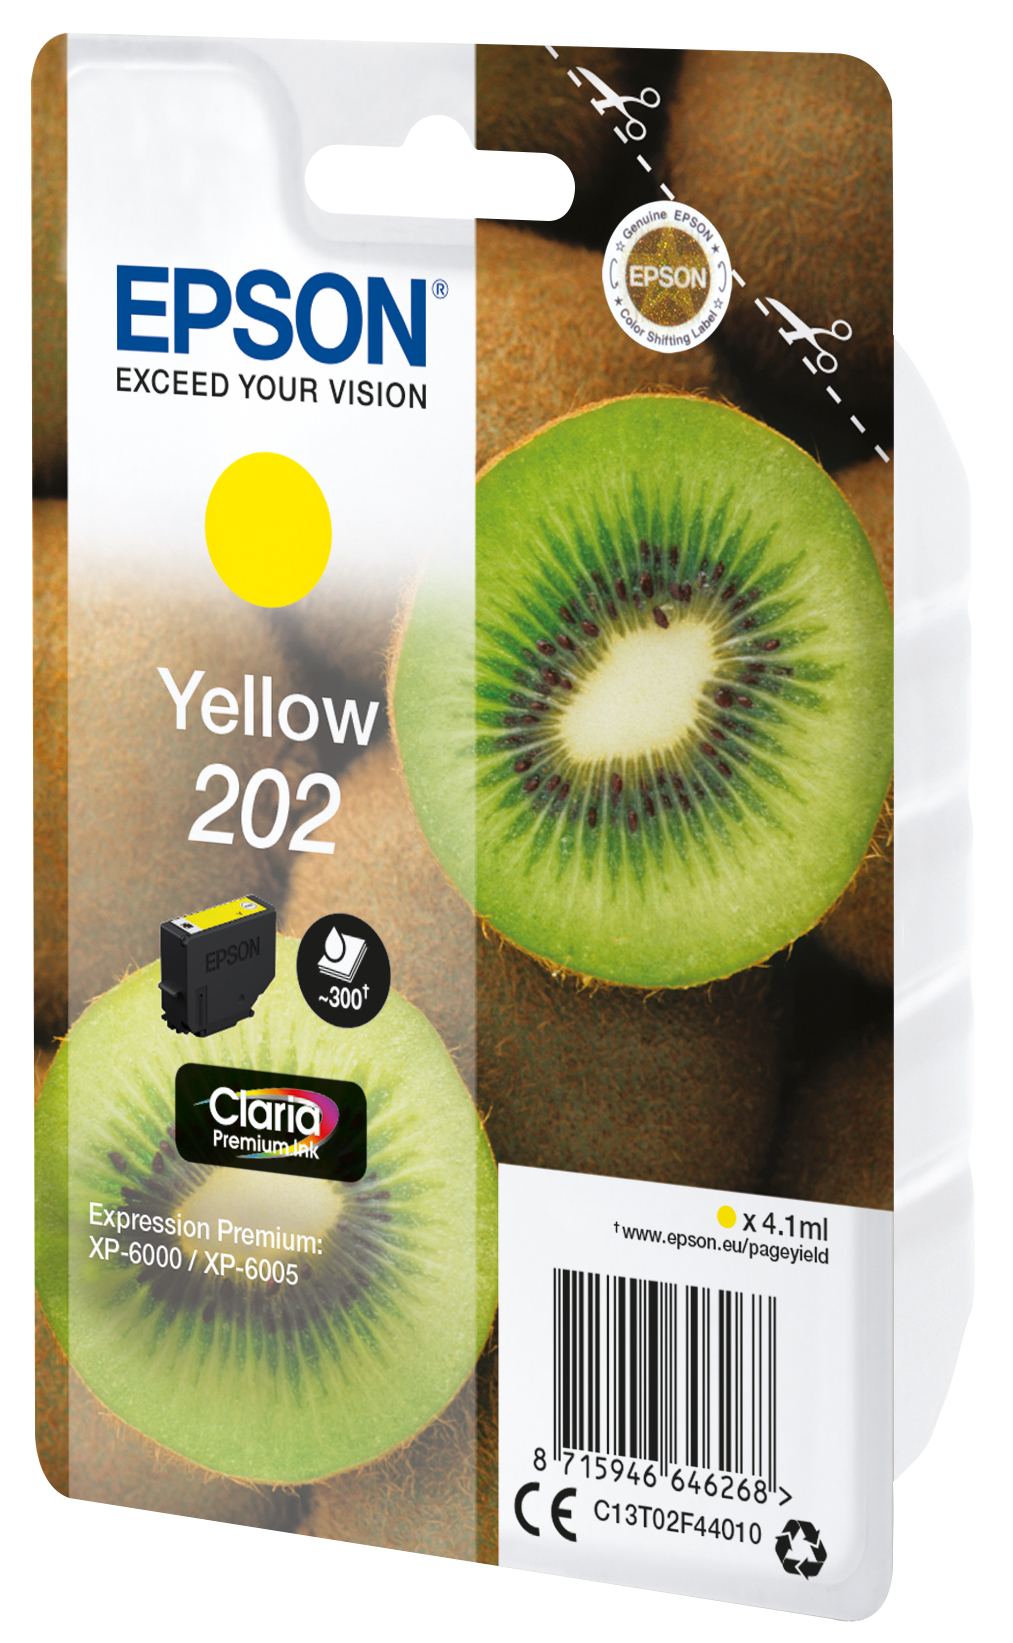 Epson Kiwi Singlepack Yellow 202 Claria Premium Ink - Standardertrag - Tinte auf Pigmentbasis - 4,1 ml - 300 Seiten - 1 Stück(e)